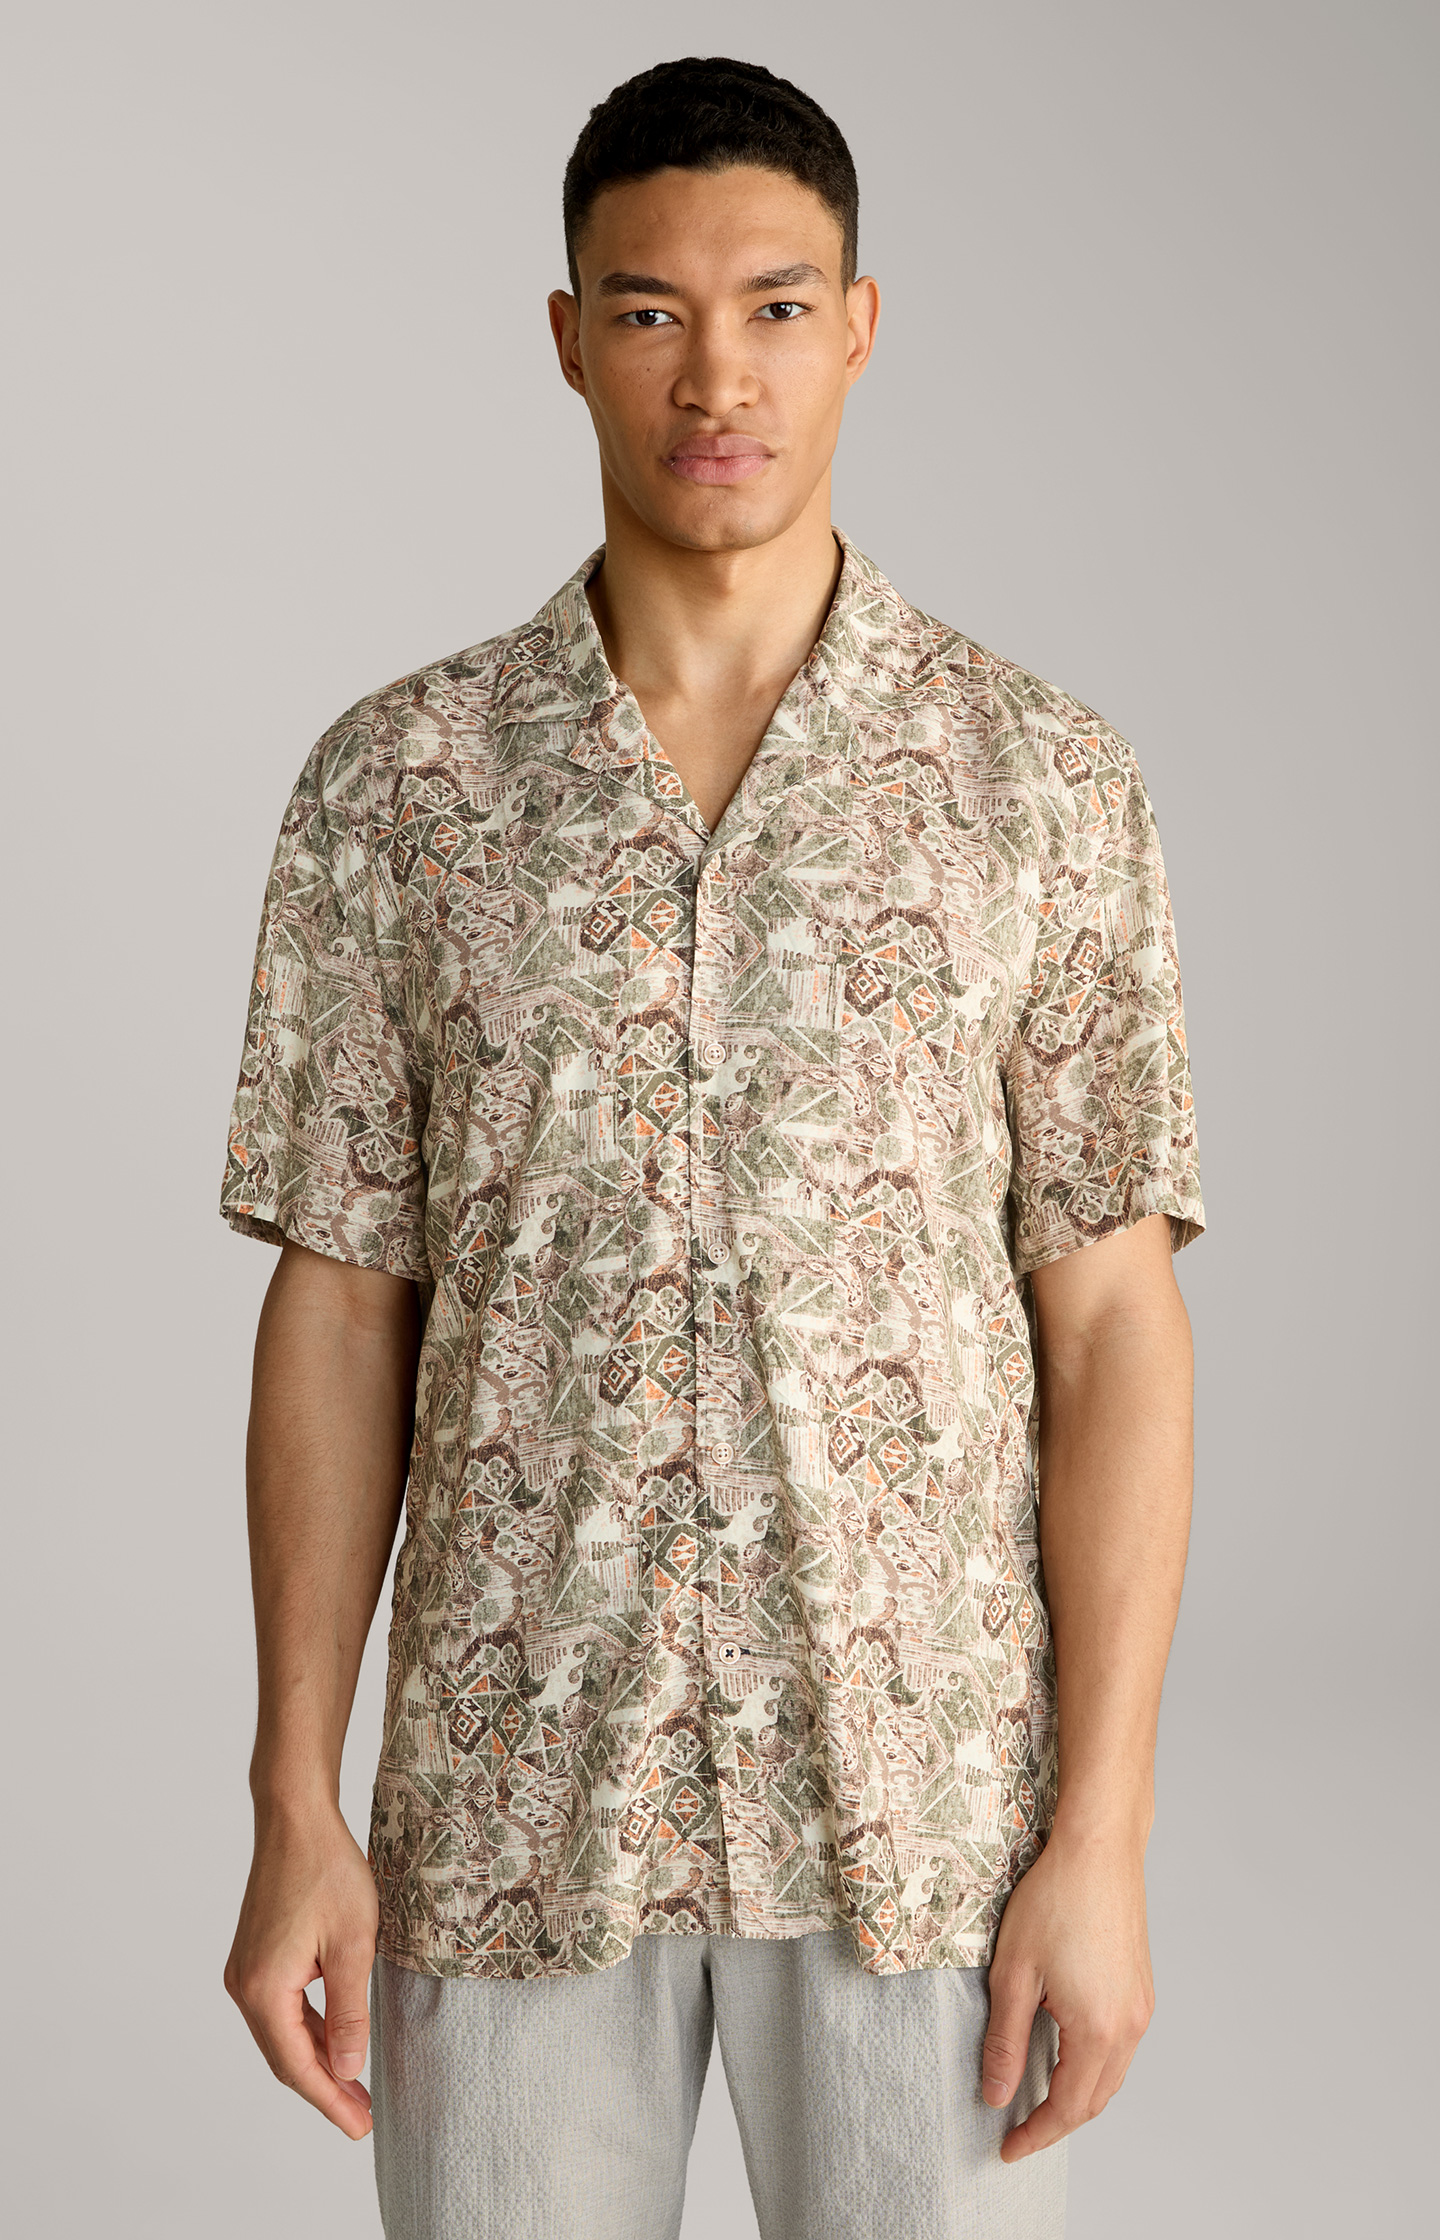 Hanes Shirt in a Beige Pattern - in the JOOP! Online Shop